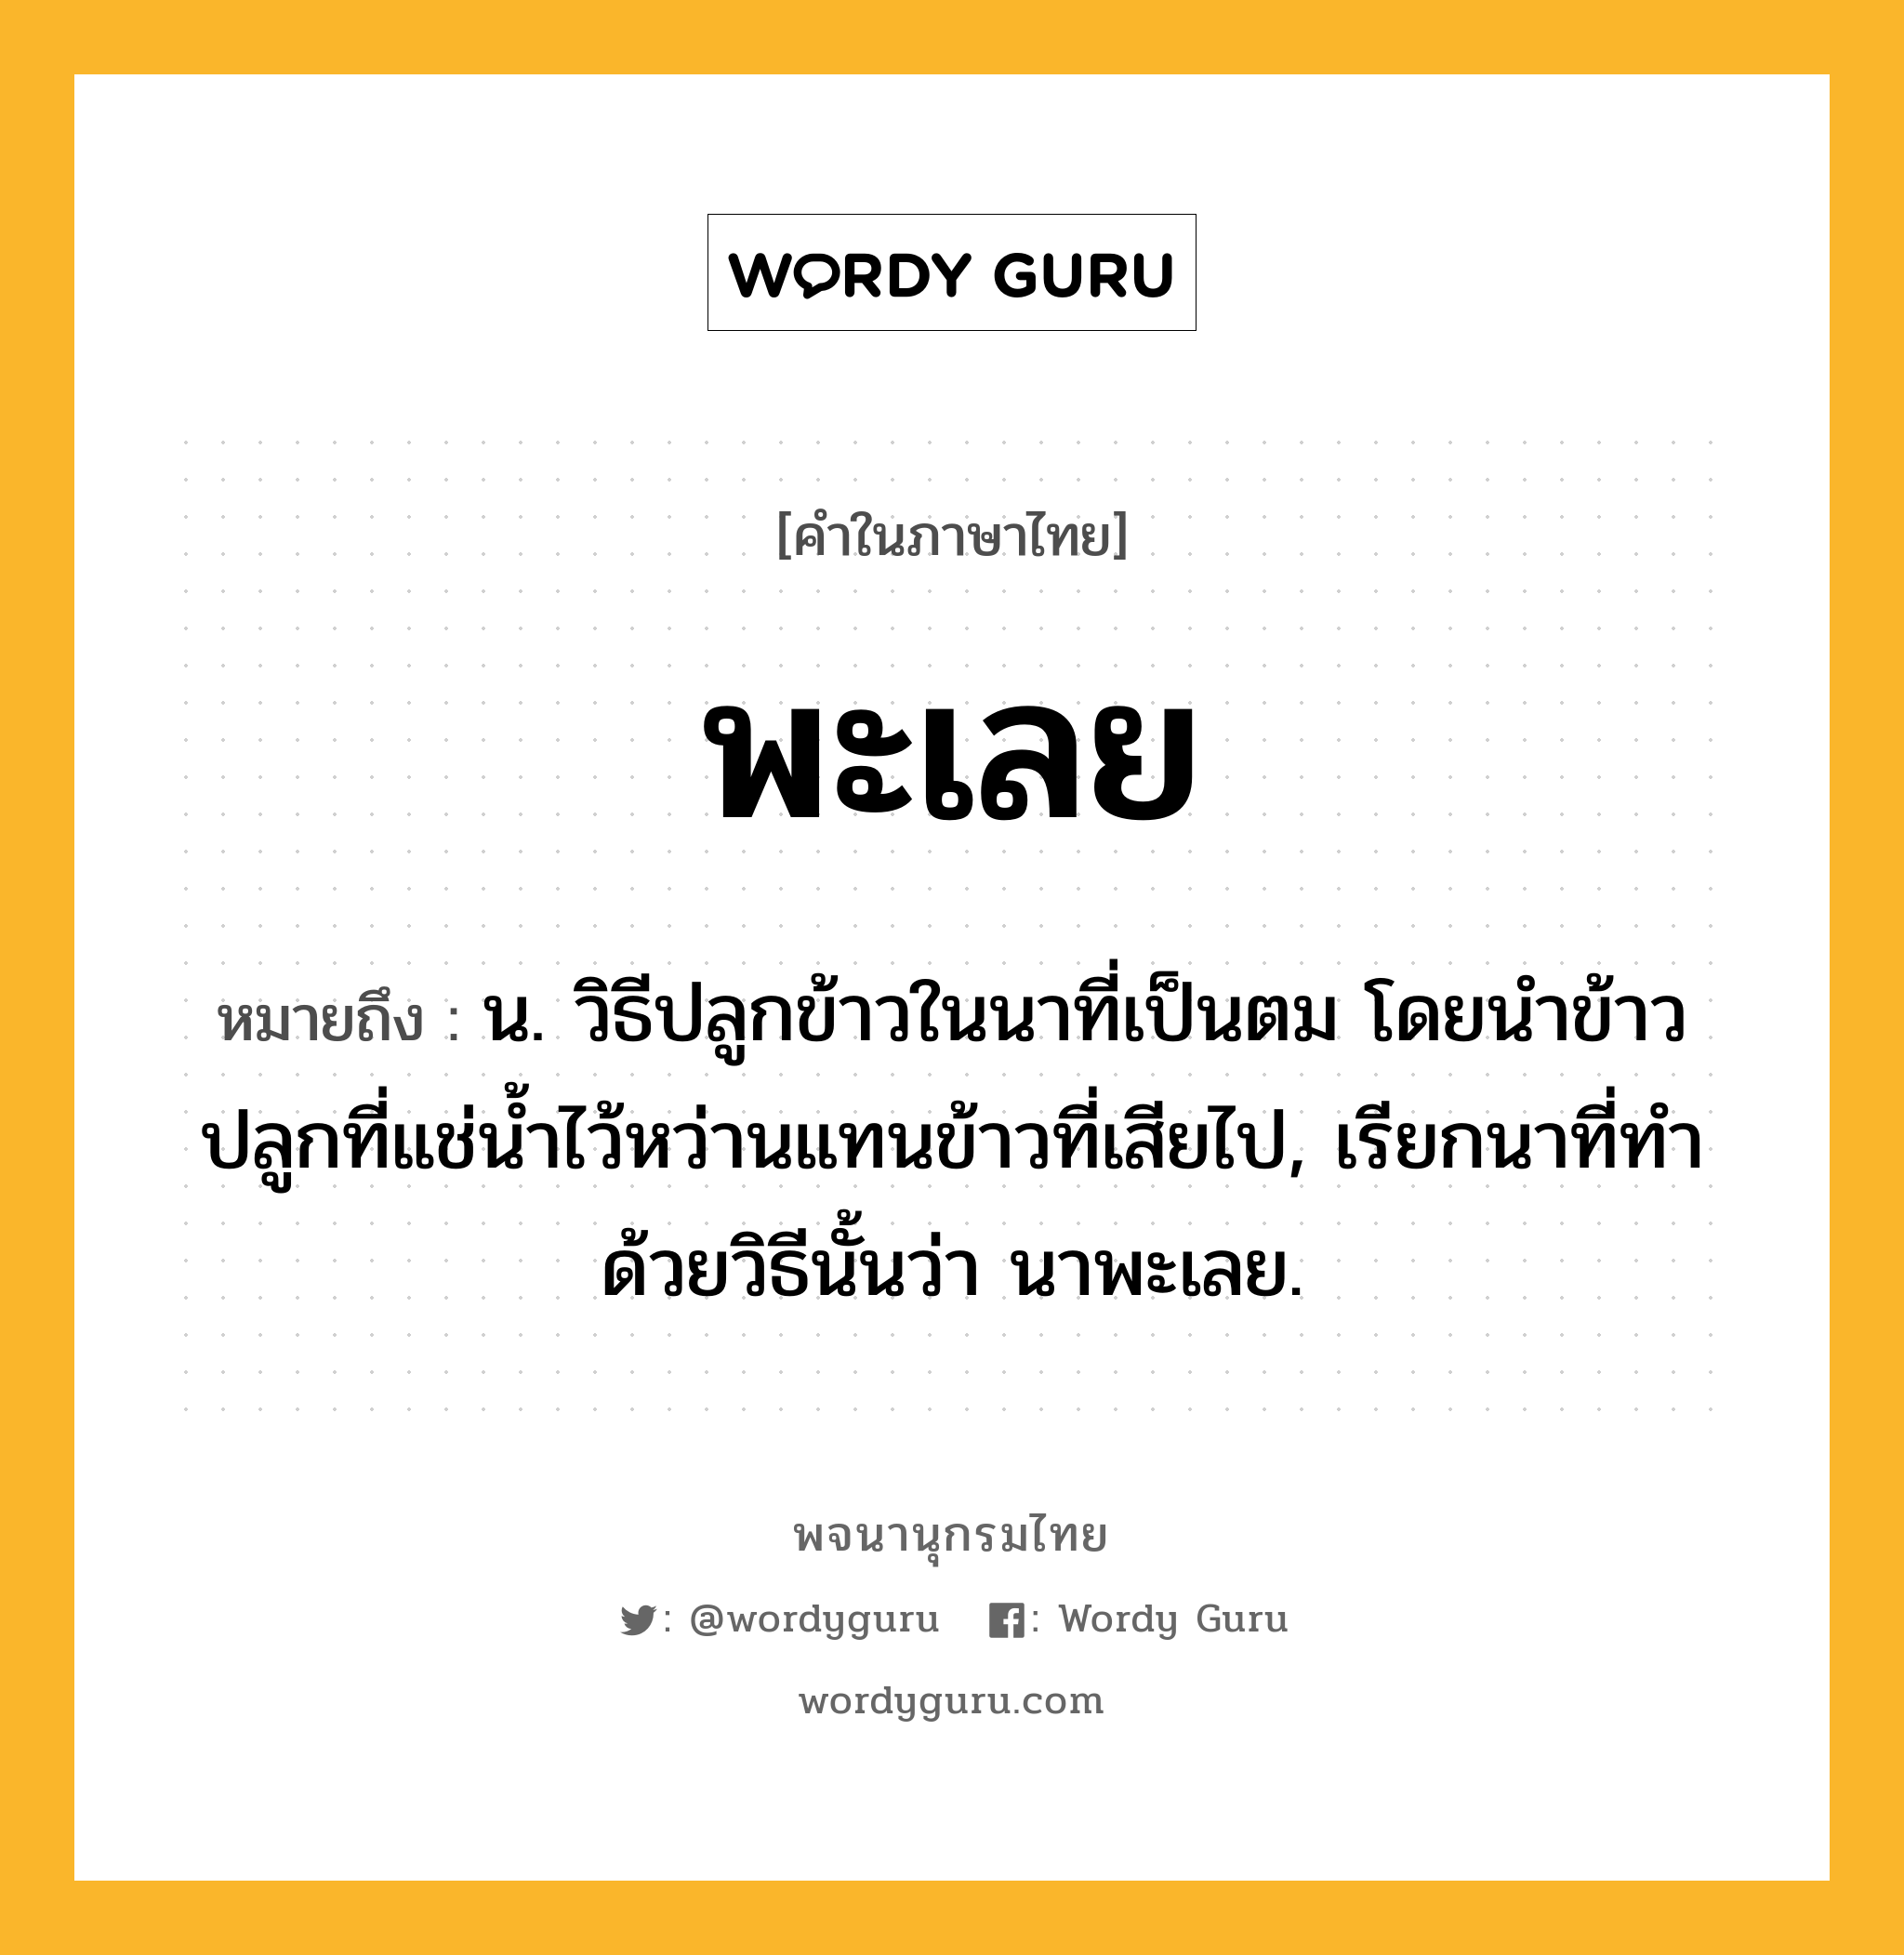 พะเลย หมายถึงอะไร?, คำในภาษาไทย พะเลย หมายถึง น. วิธีปลูกข้าวในนาที่เป็นตม โดยนําข้าวปลูกที่แช่นํ้าไว้หว่านแทนข้าวที่เสียไป, เรียกนาที่ทําด้วยวิธีนั้นว่า นาพะเลย.